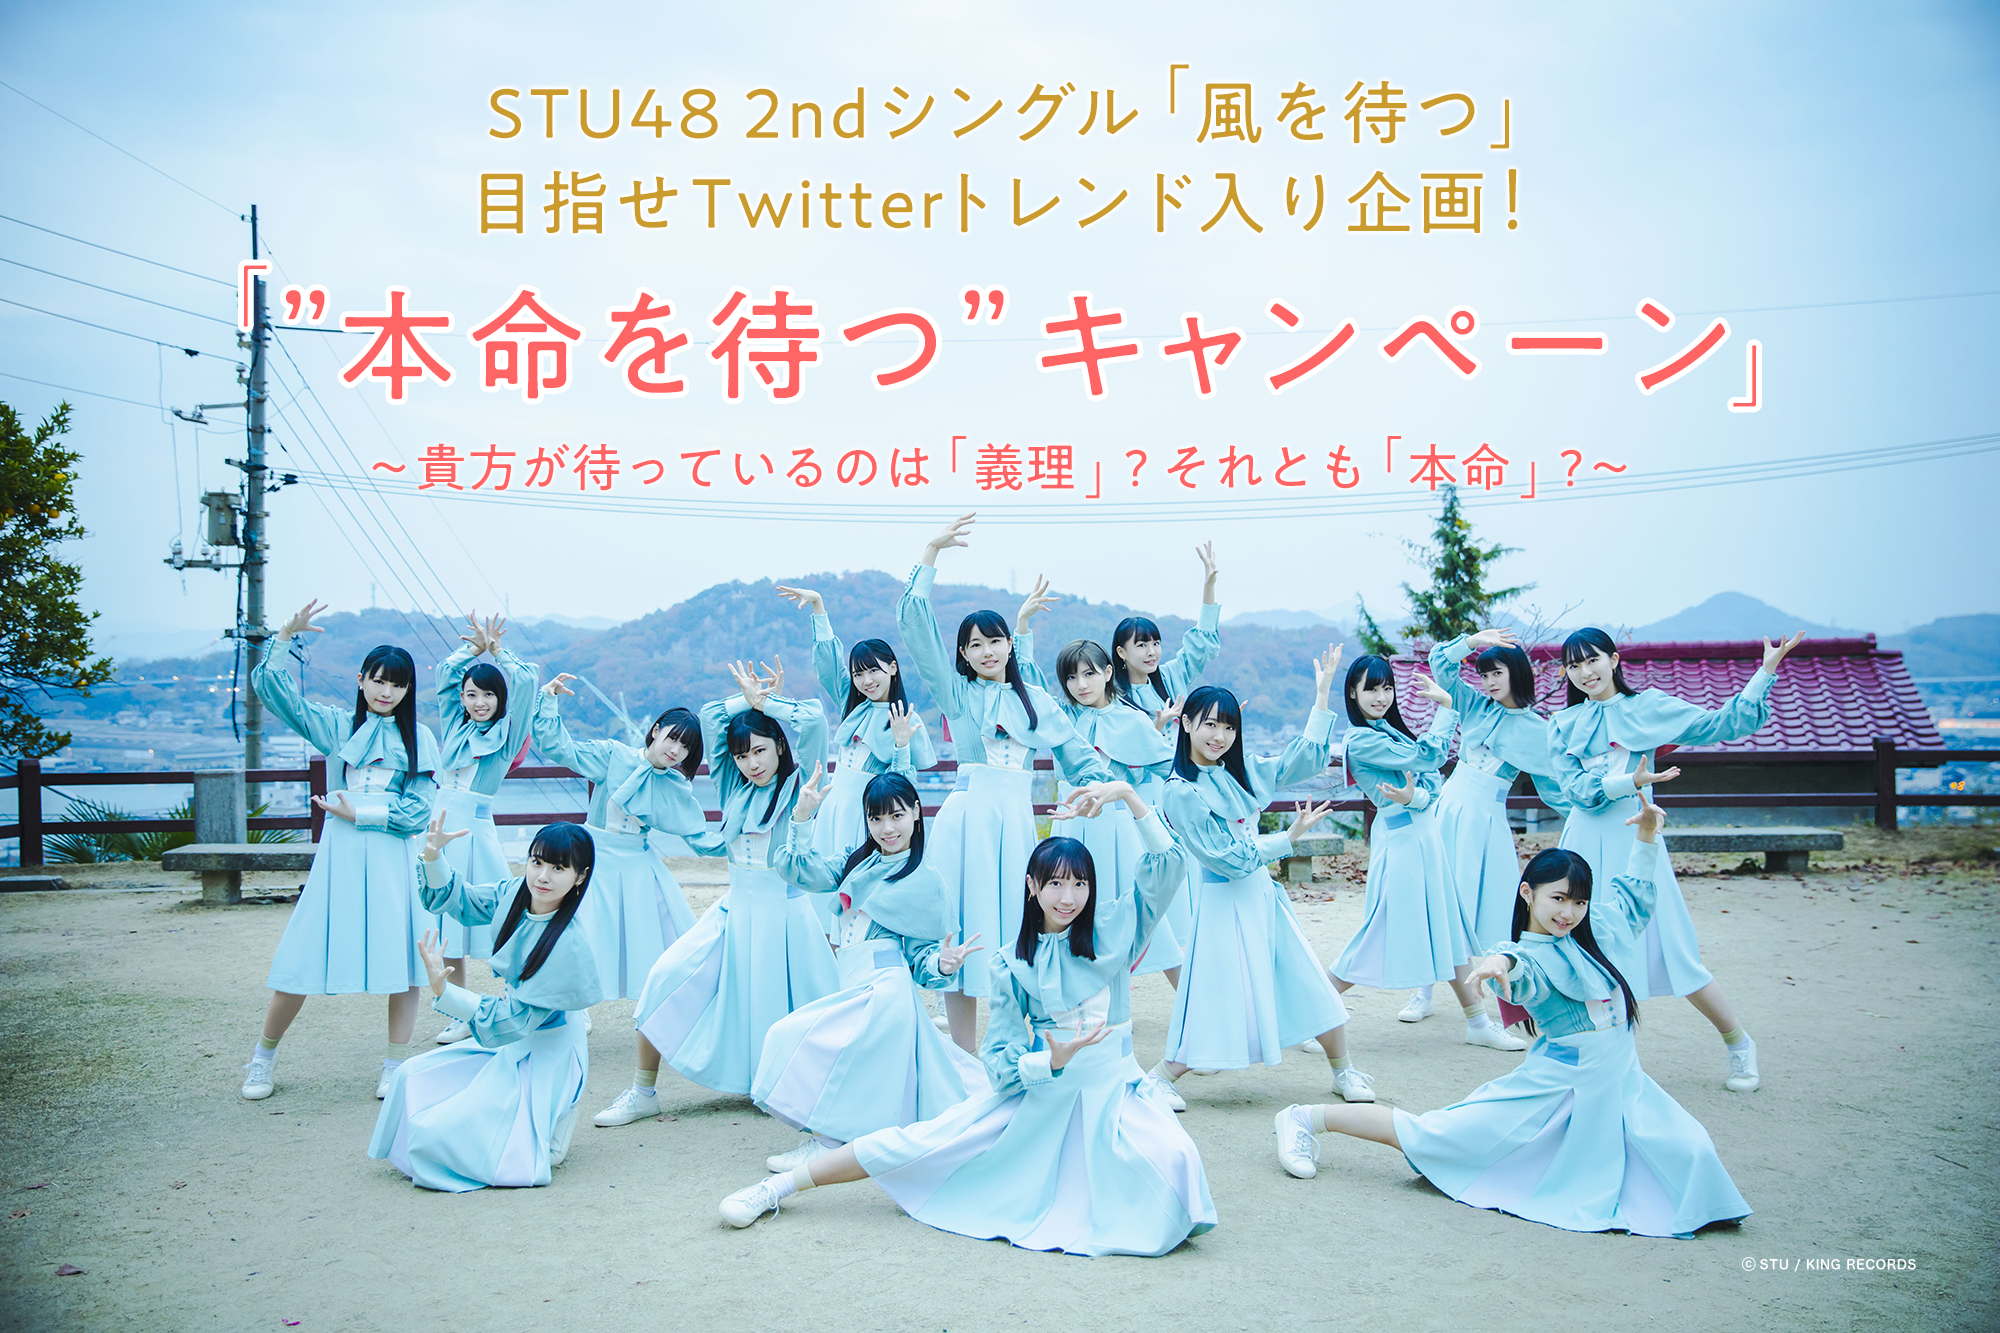 STU48 2ndシングル「風を待つ」目指せTwitterトレンド入り企画！「”本命を待つ” キャンペーン」～貴方が待っているのは「義理」?それとも「本命」?～